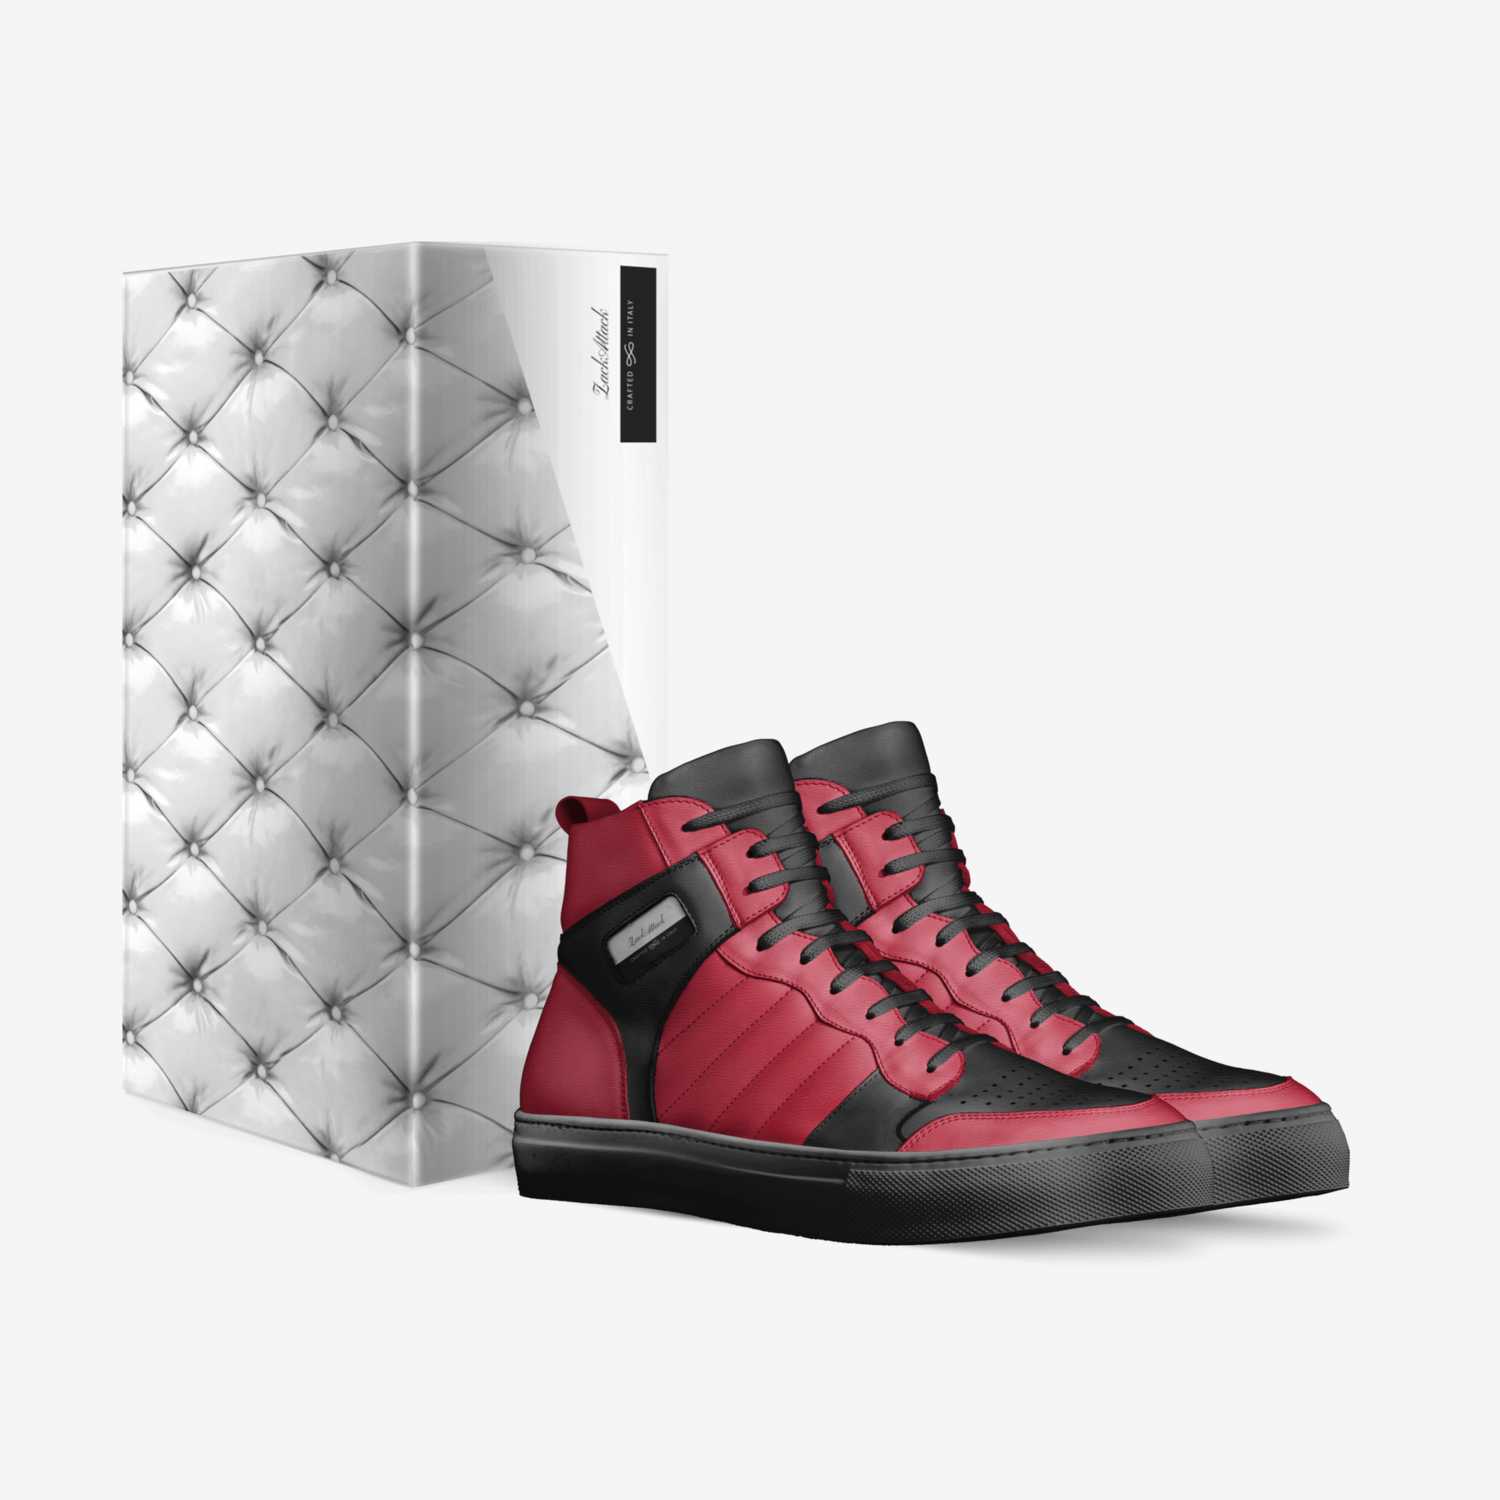 Zack max custom made in Italy shoes by John Alvarez | Box view